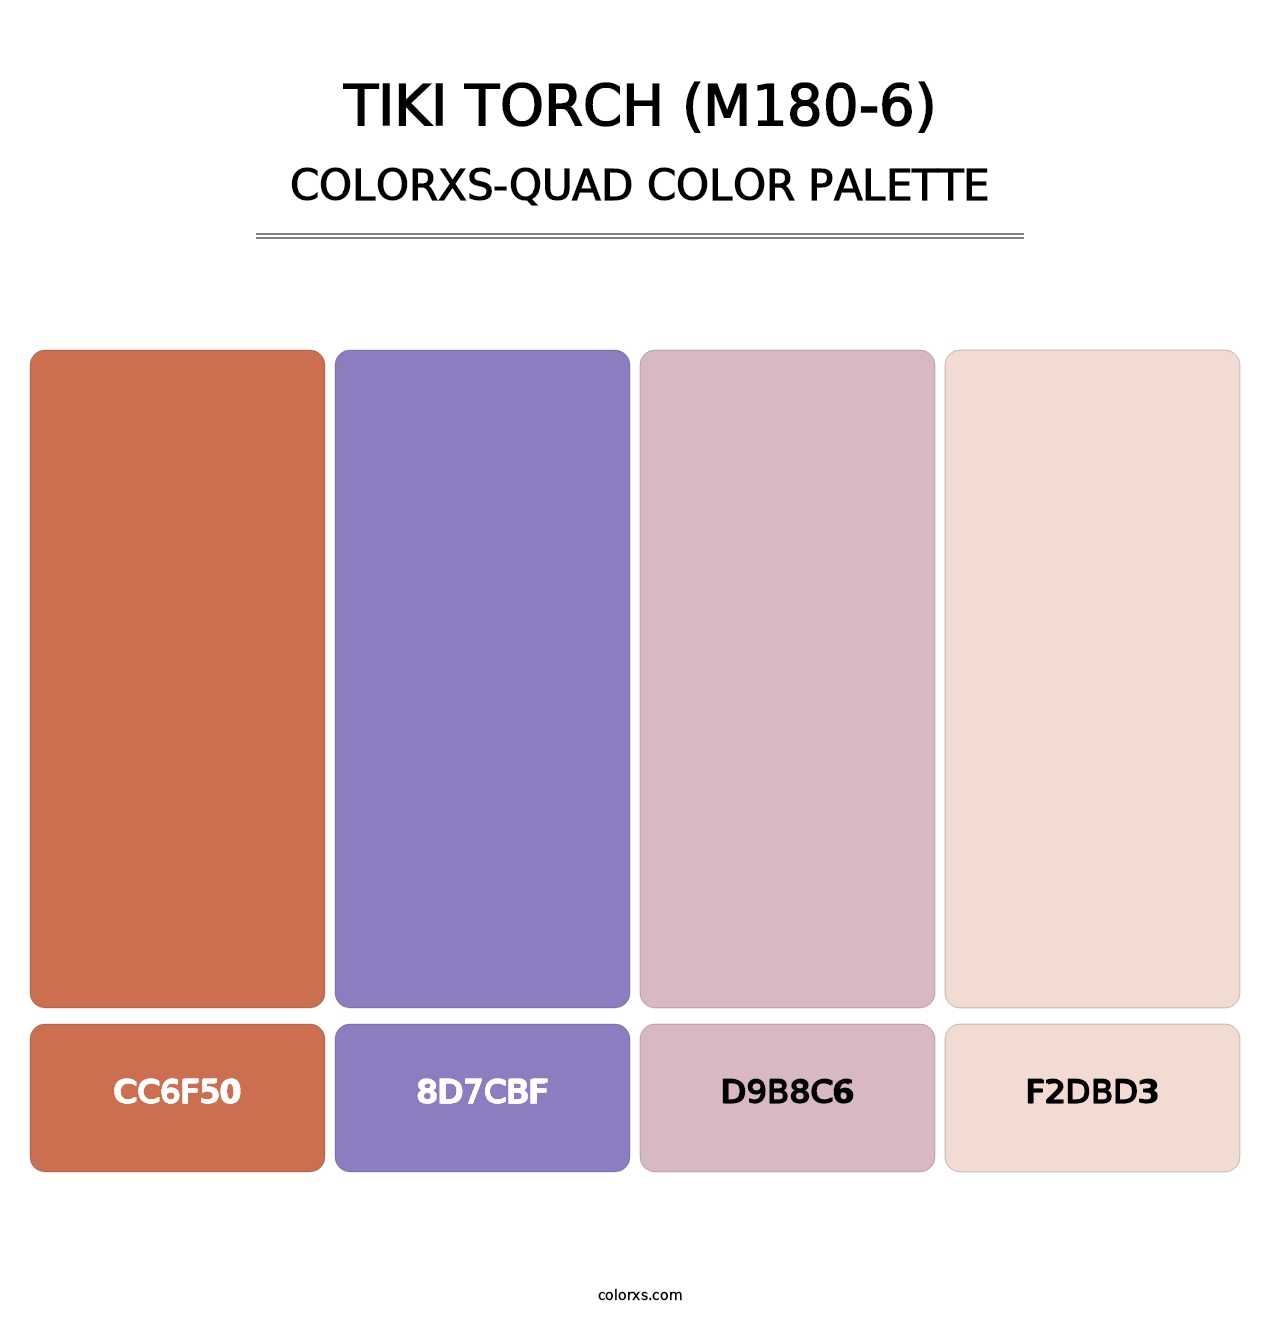 Tiki Torch (M180-6) - Colorxs Quad Palette